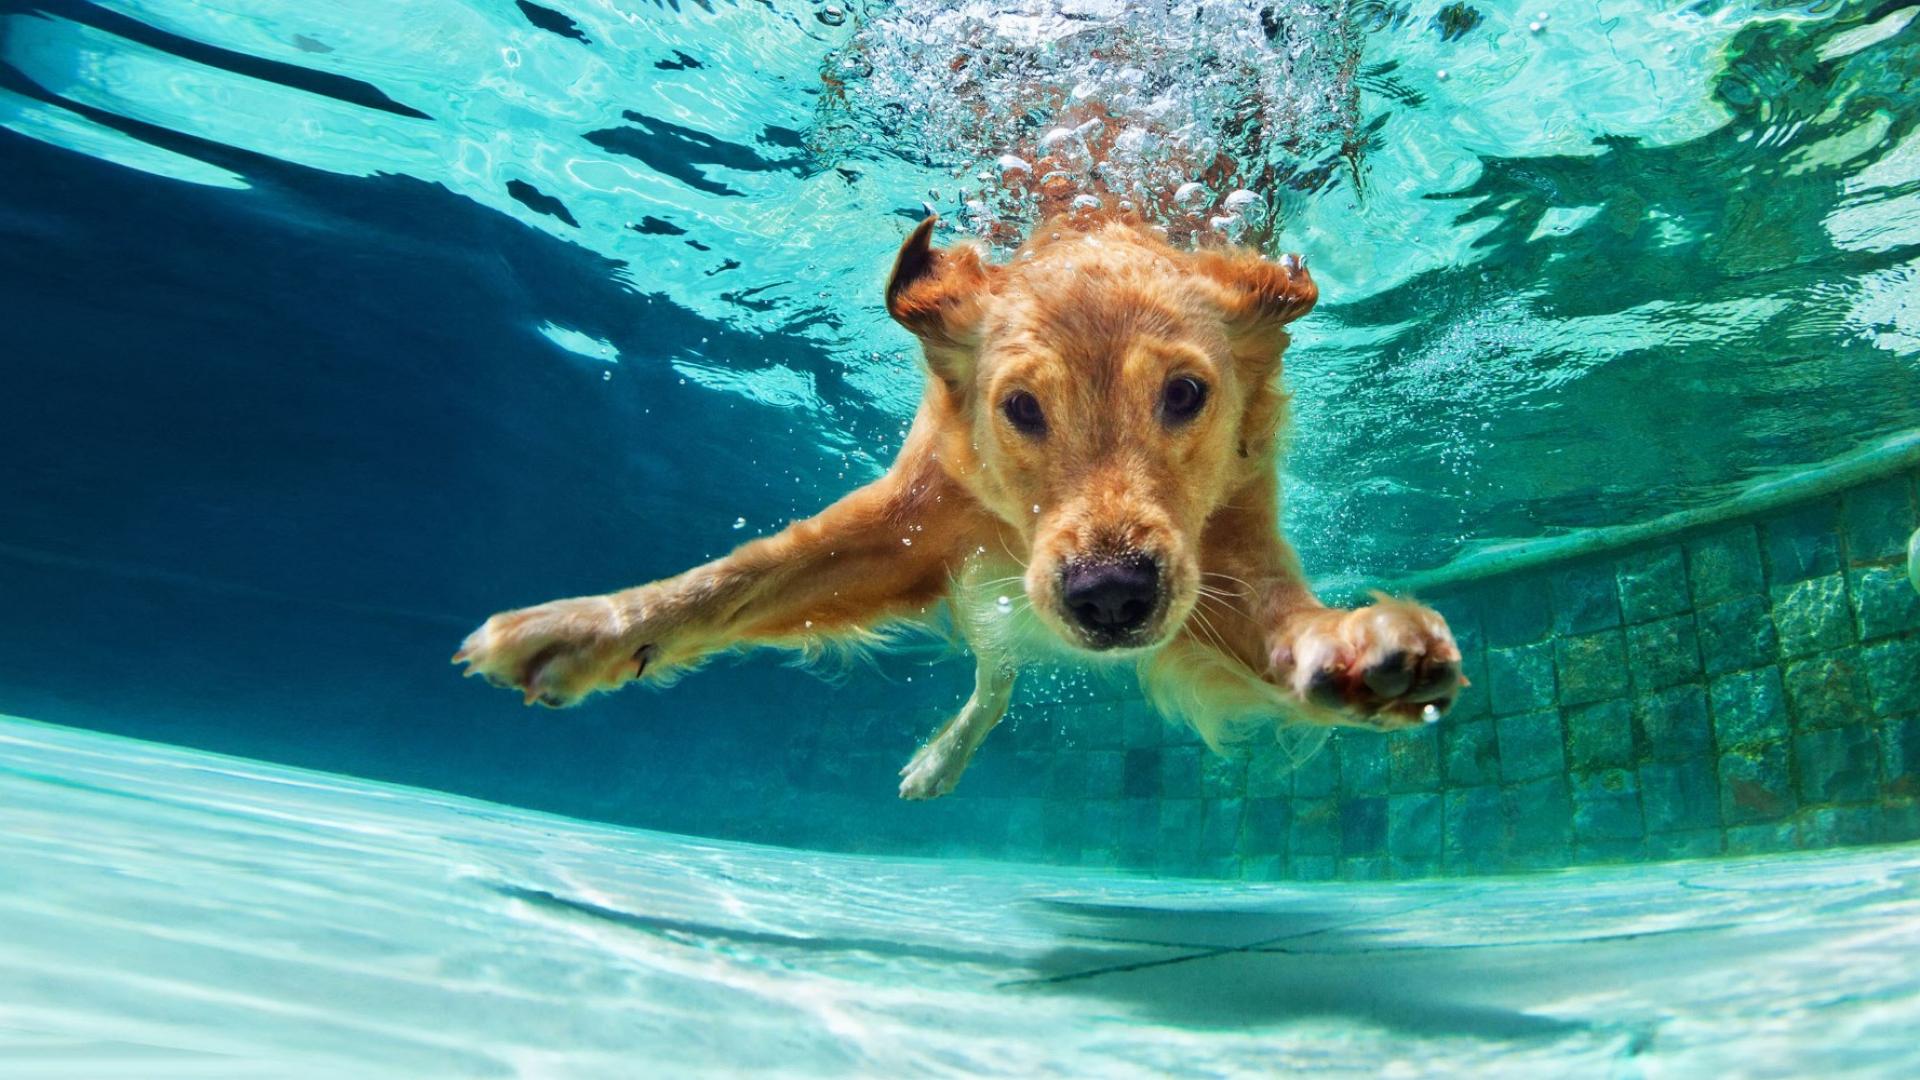 Auf dem Bild ist ein glücklicher Hund zu sehen, der in einem Pool unter Wasser taucht.